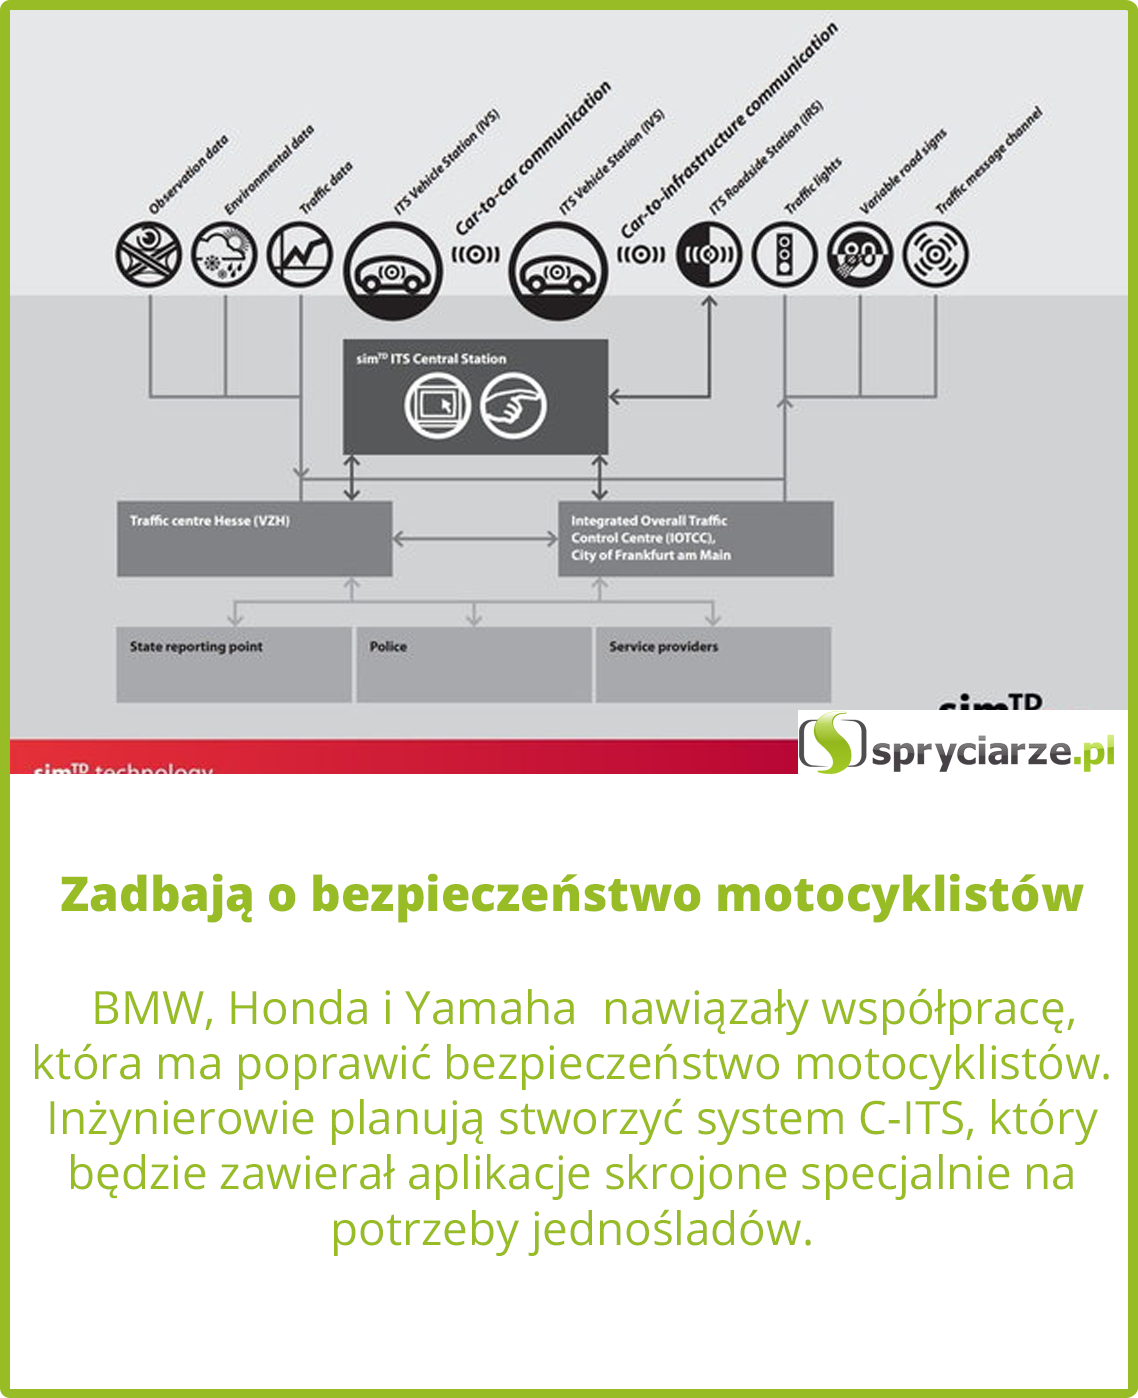 BMW, Honda i Yamaha  nawiązały współpracę, która ma poprawić bezpieczeństwo motocyklistów. 